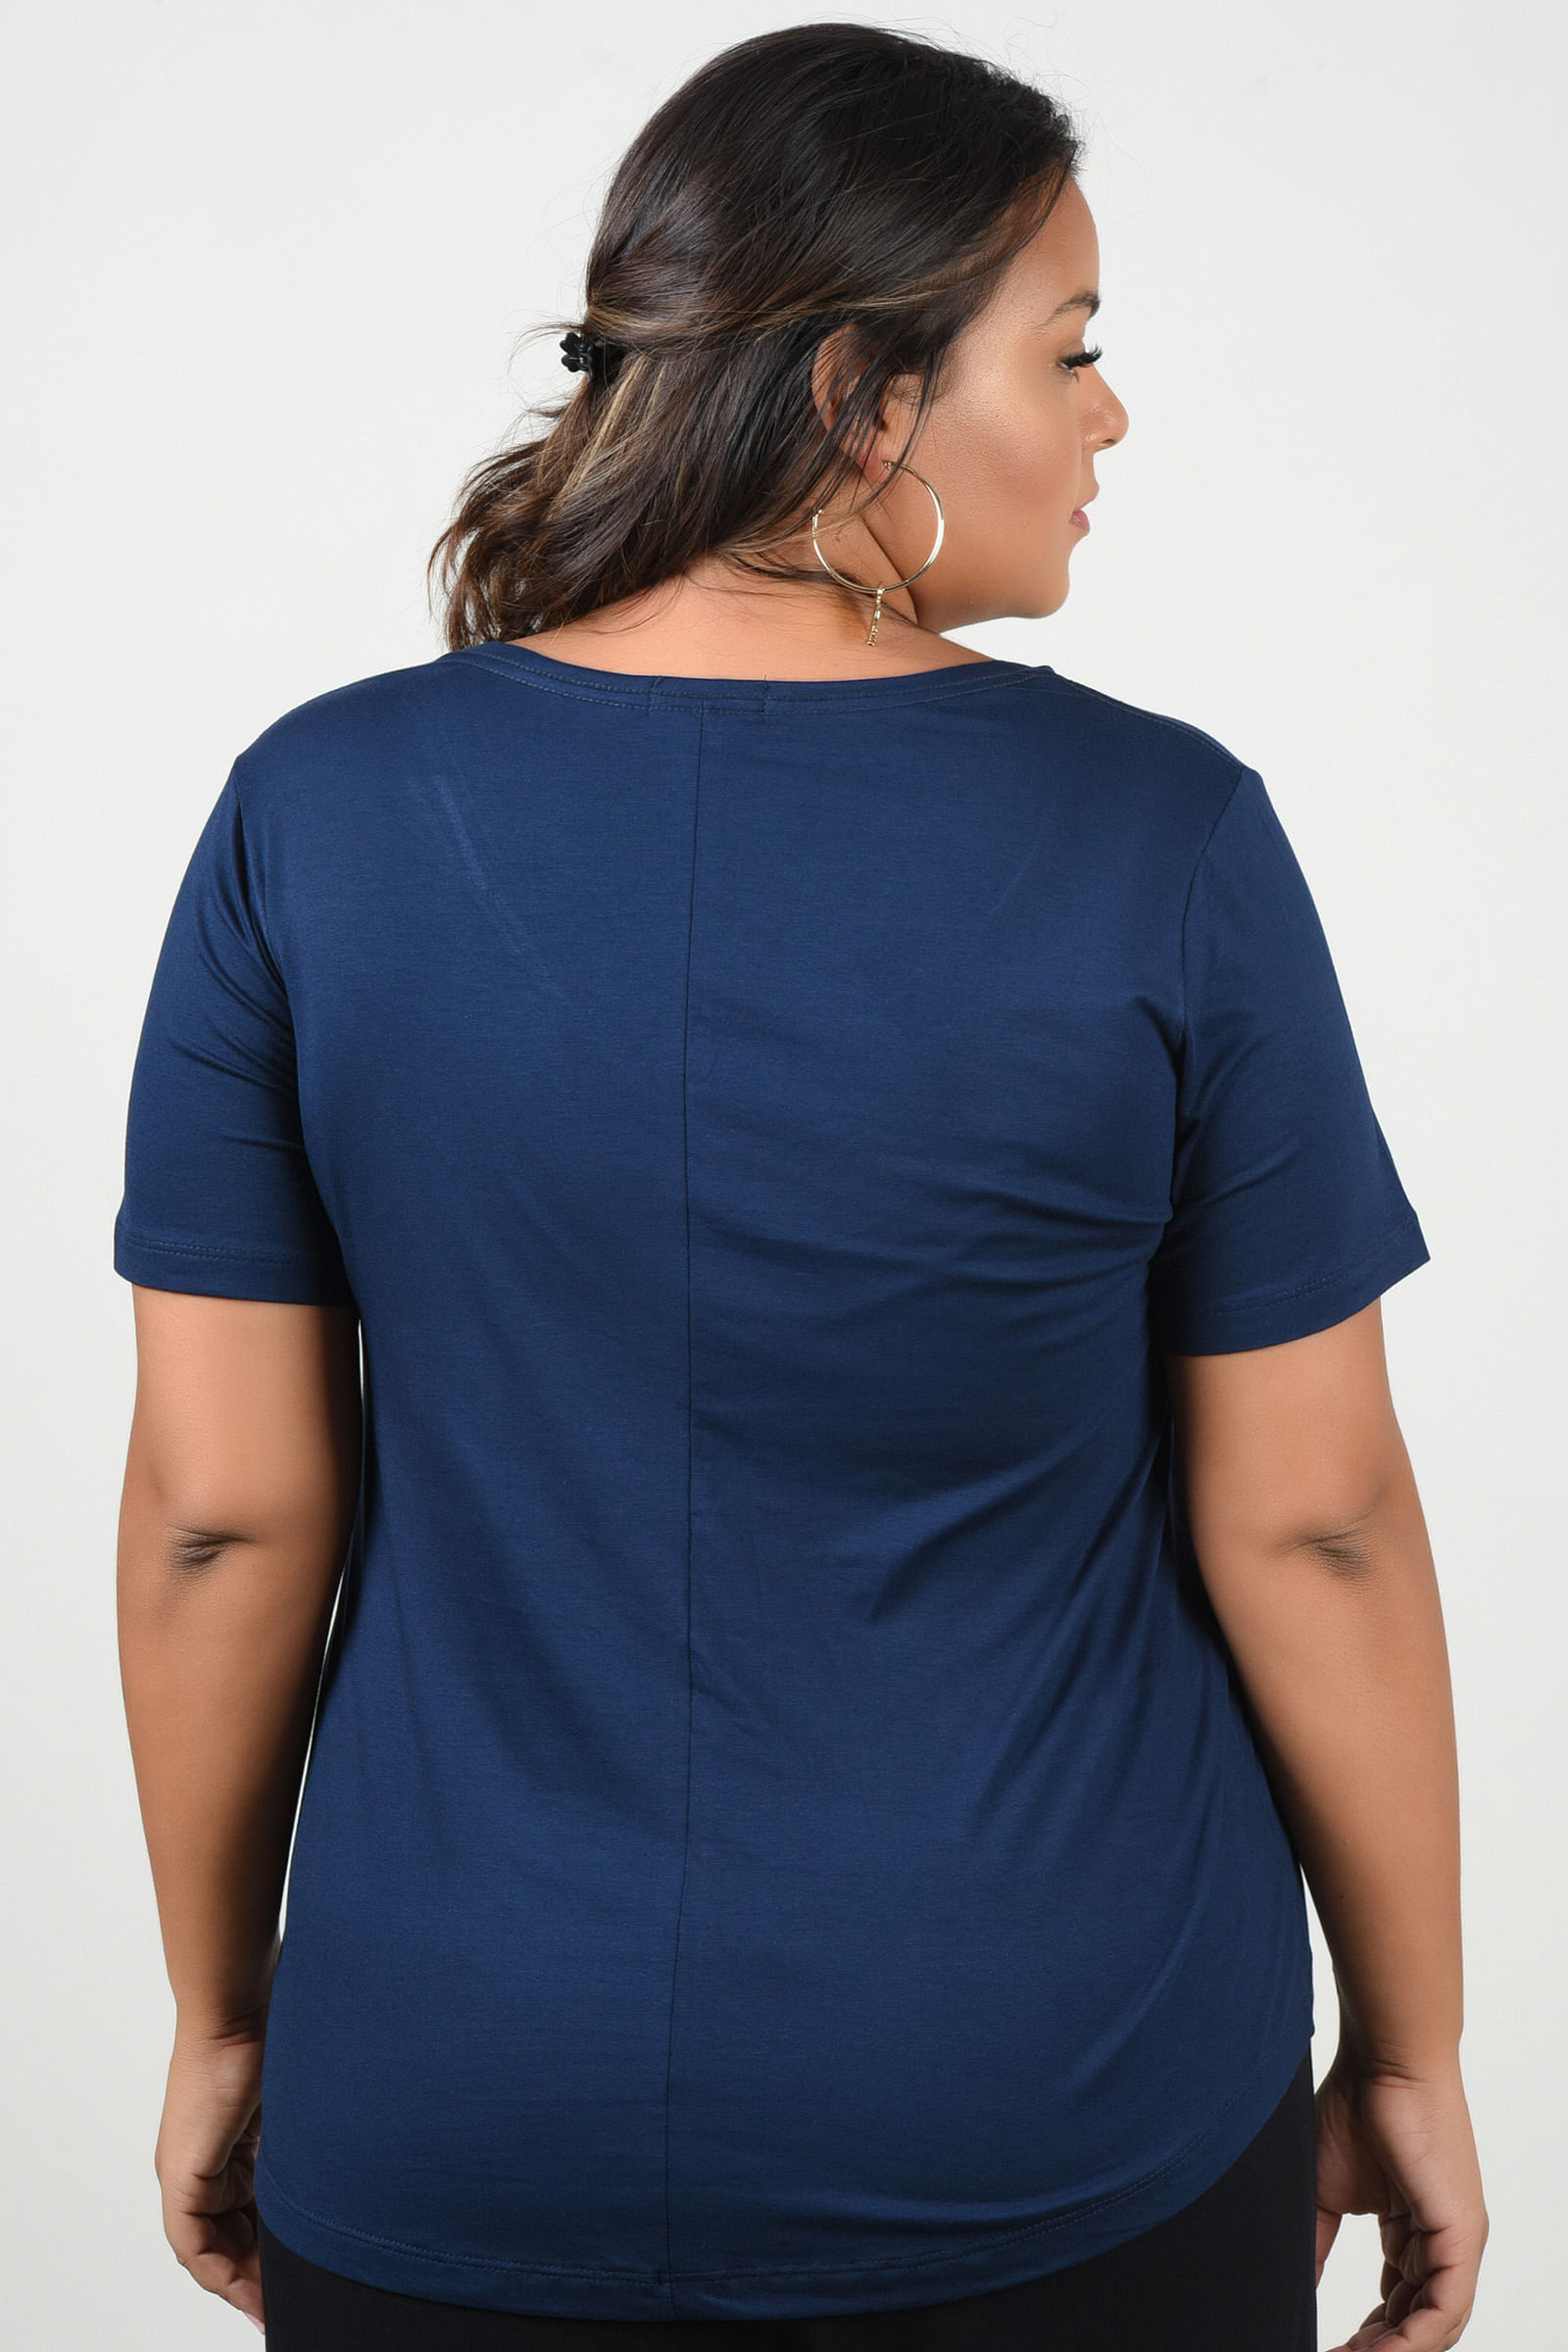 Blusa T-Shirt Plus Size - Oferta de Blusa Feminina e Mais - Kauê